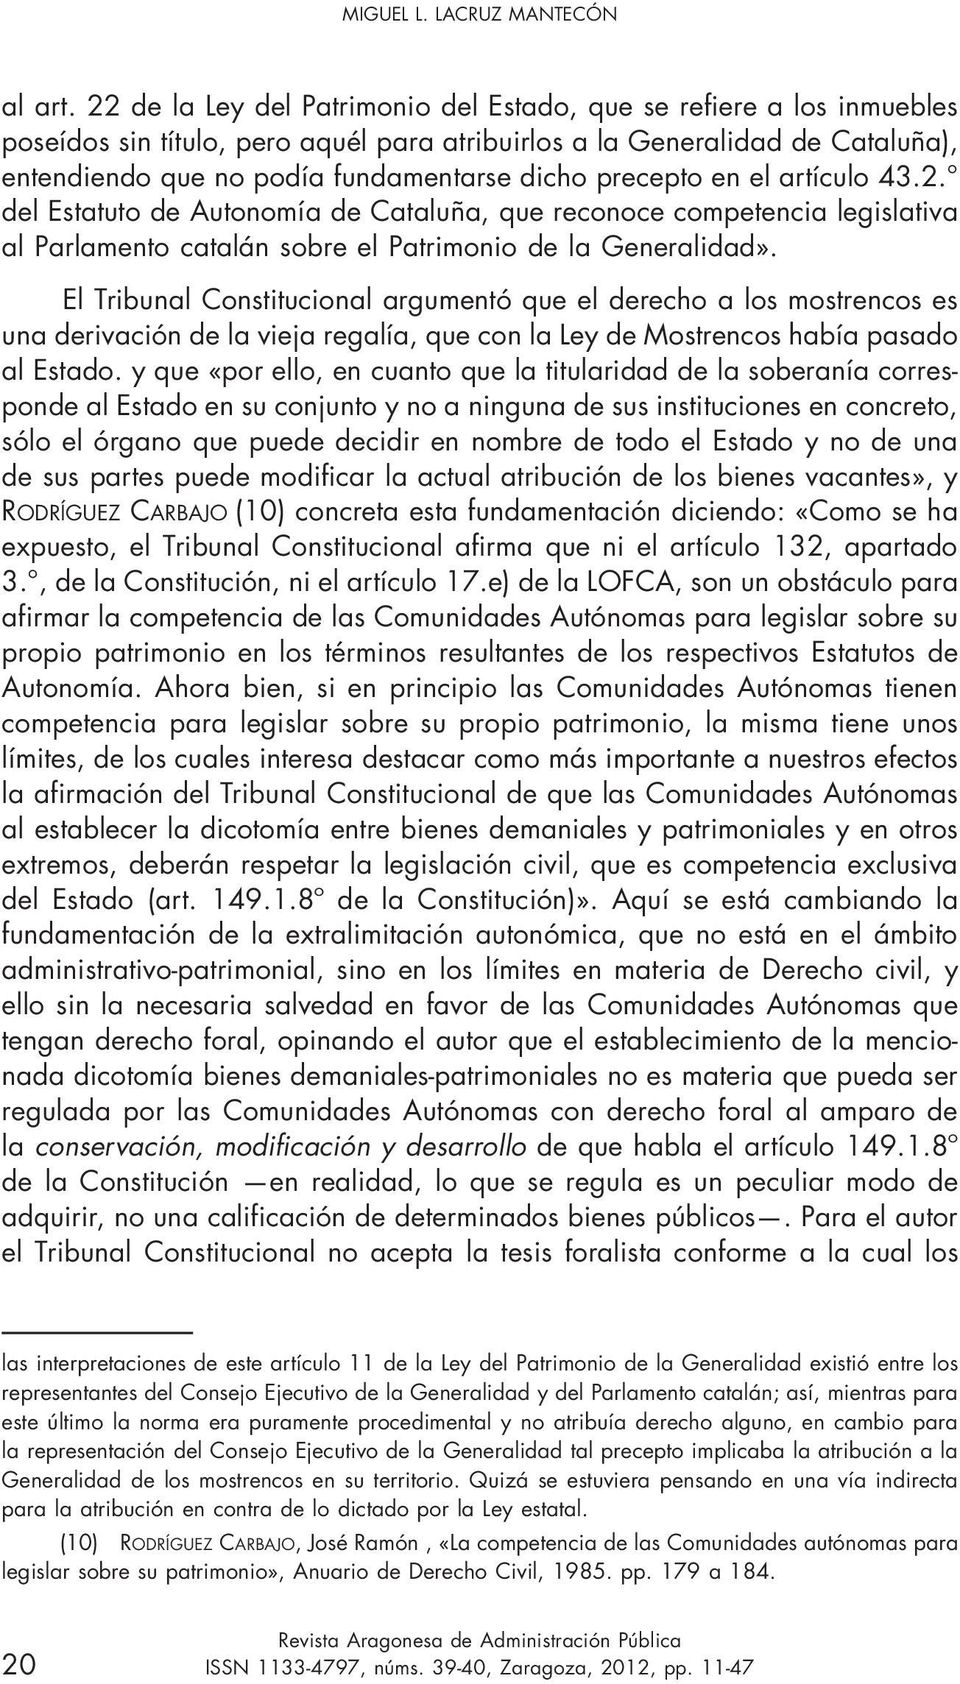 precepto en el artículo 43.2. del Estatuto de Autonomía de Cataluña, que reconoce competencia legislativa al Parlamento catalán sobre el Patrimonio de la Generalidad».